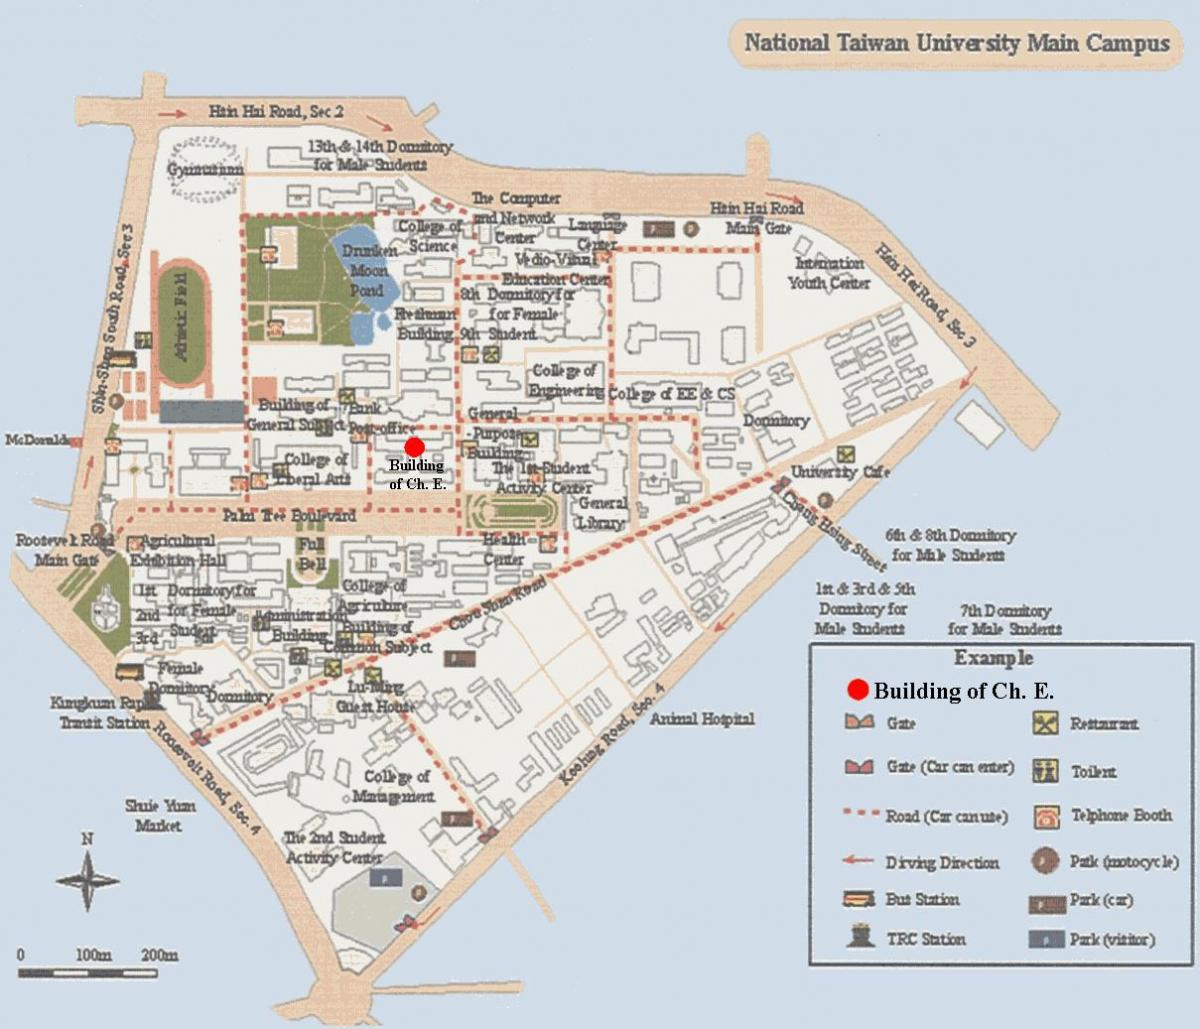 नेशनल ताइवान विश्वविद्यालय कैम्पस का नक्शा